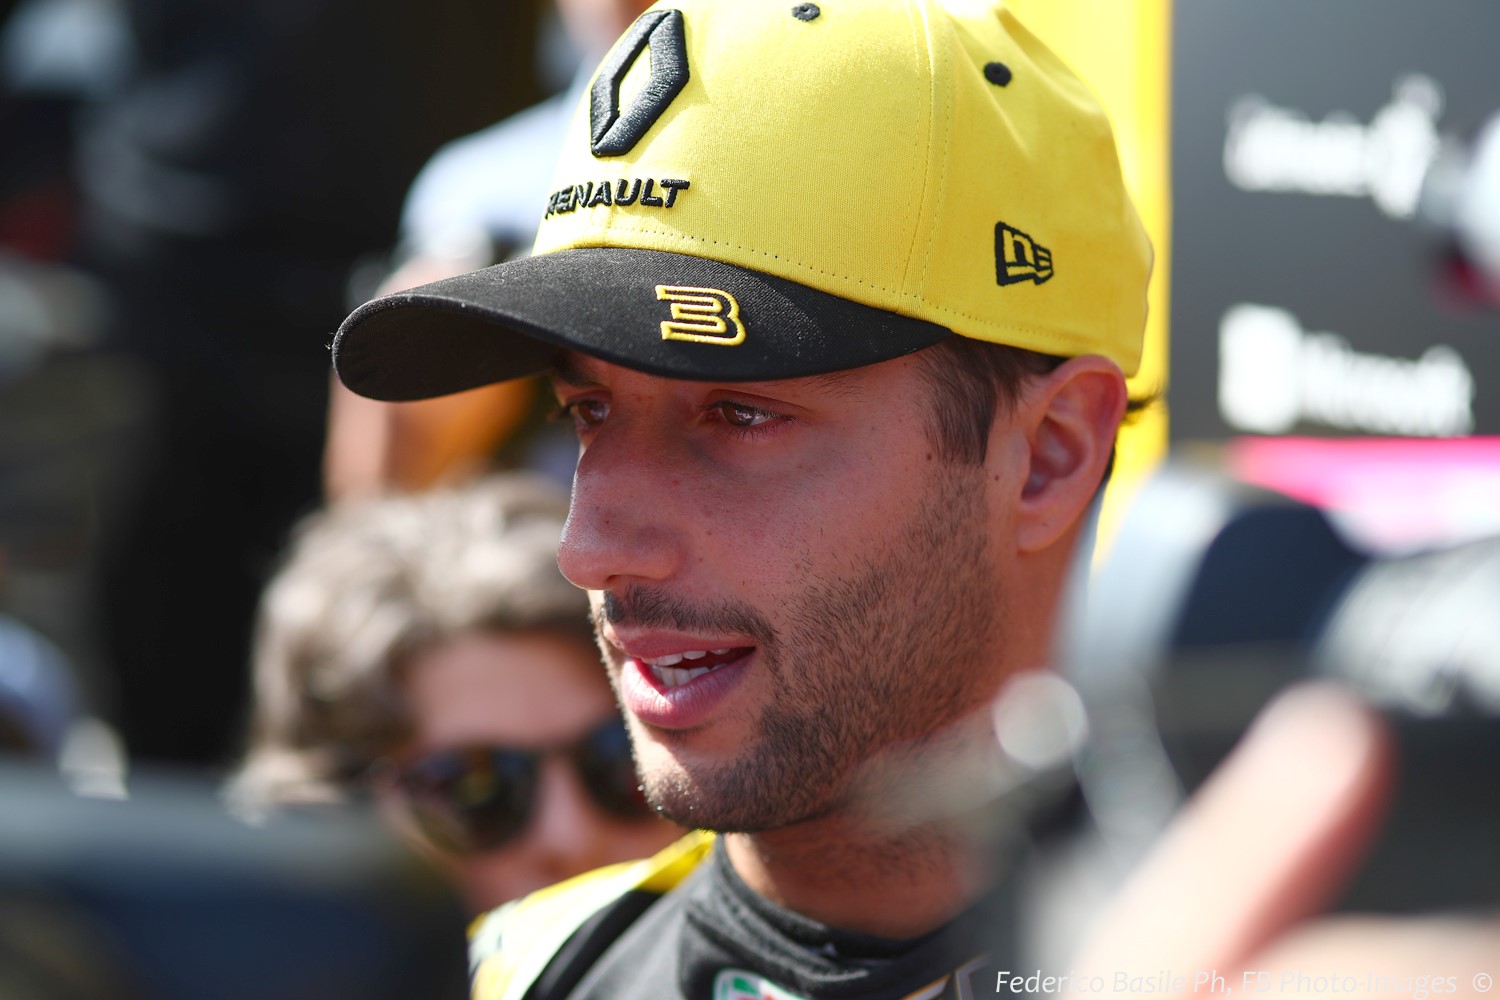 Daniel Ricciardo - there for the retirement money